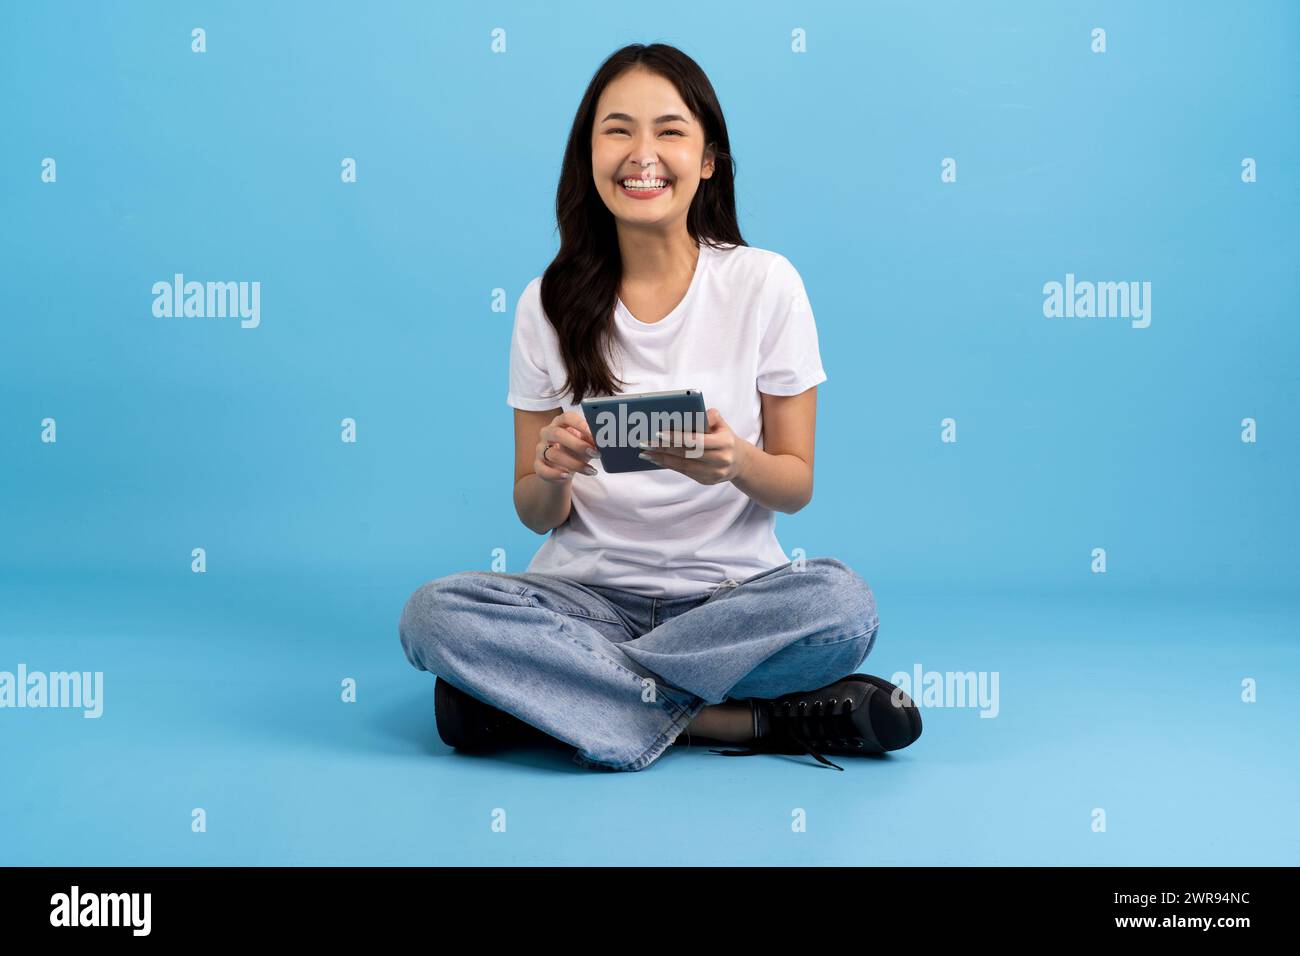 Schönes Mädchen Happy hält Tablet-Computer auf blauem Hintergrund Sitzen und lächeln mit einer entspannten Haltung Genießen Sie das Surfen im Internet mit modernen Geräten Stockfoto